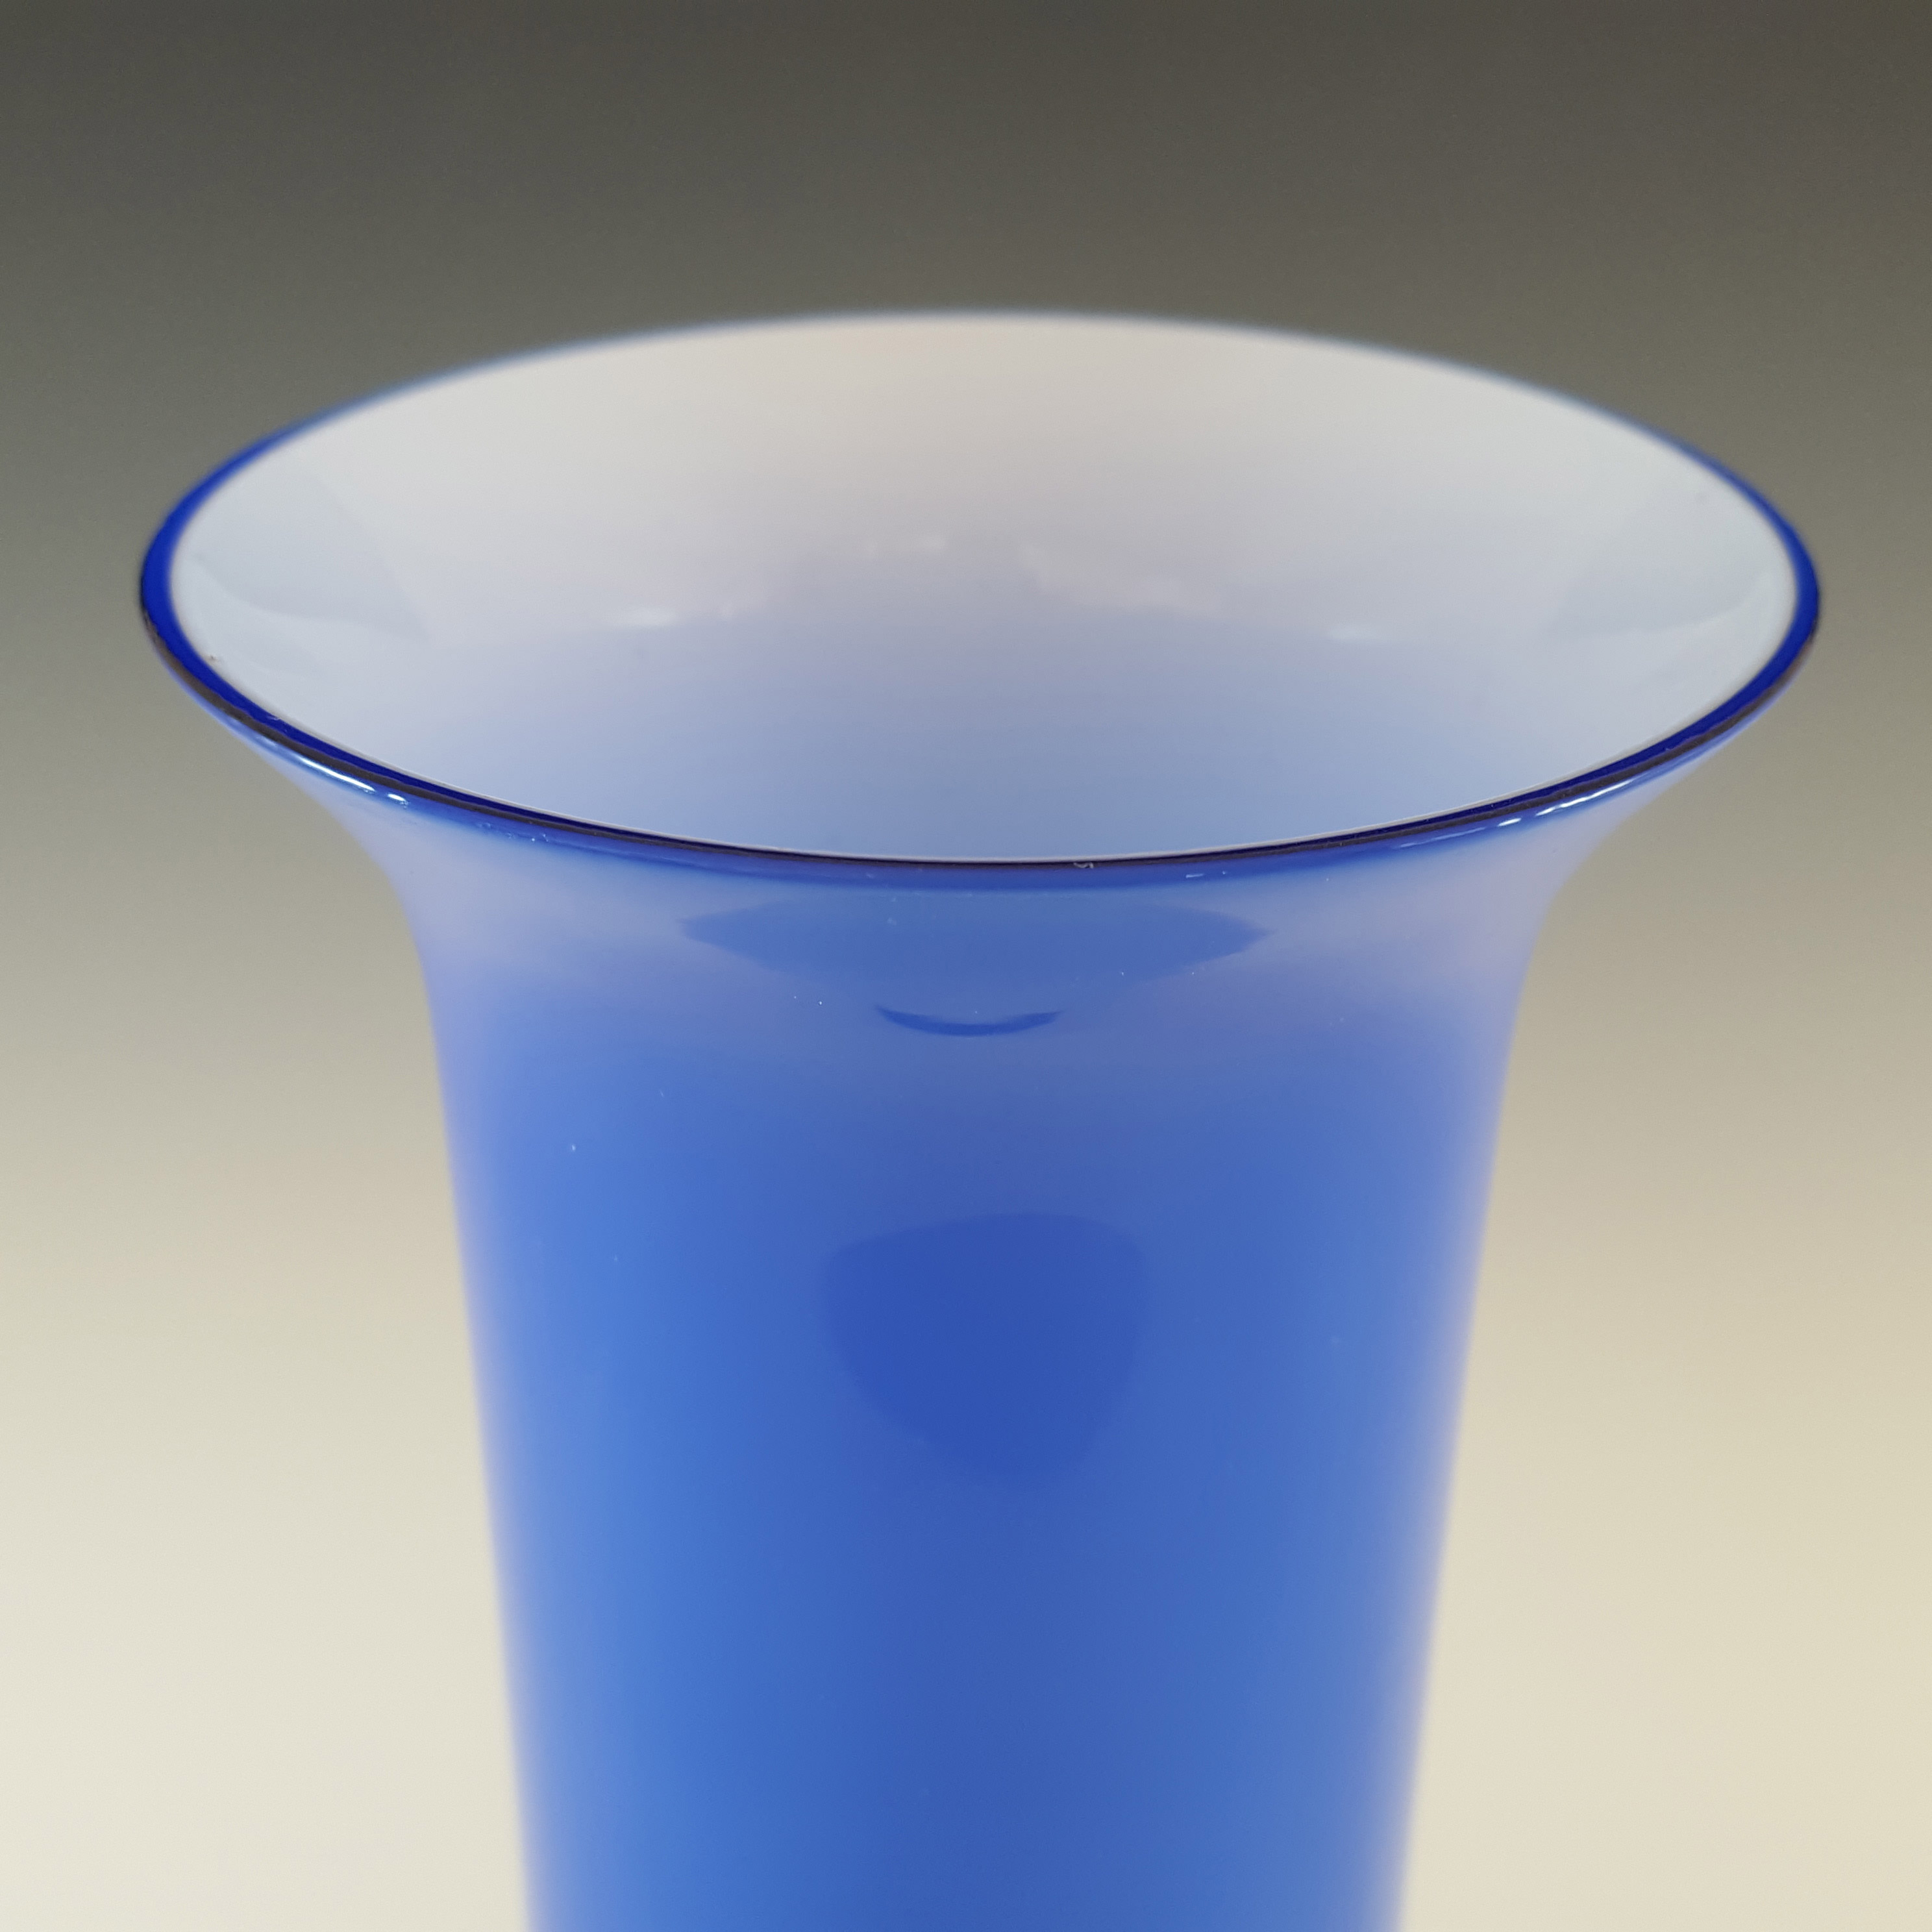 Empoli 1970's Italian Blue Retro Cased Glass Vase - Click Image to Close